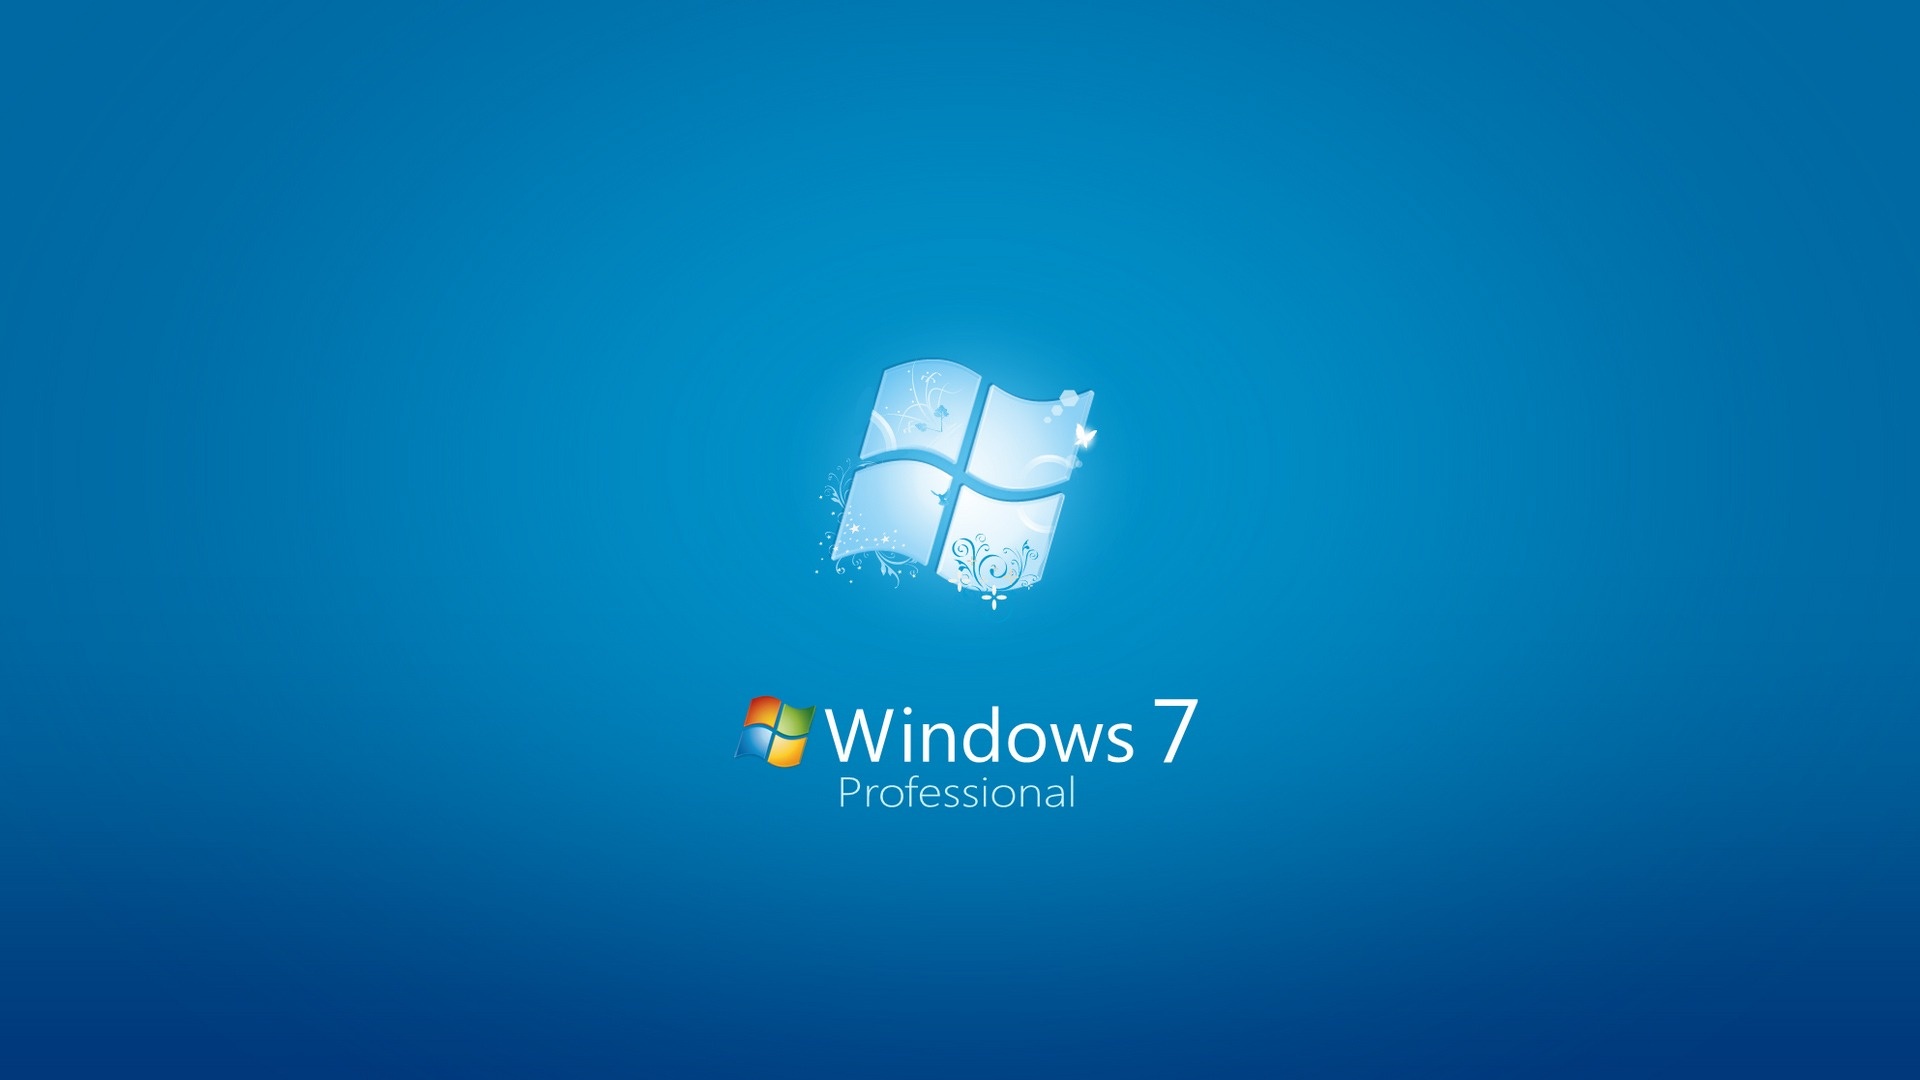 HD Wallpapers for Windows 7 | PixelsTalk.Net